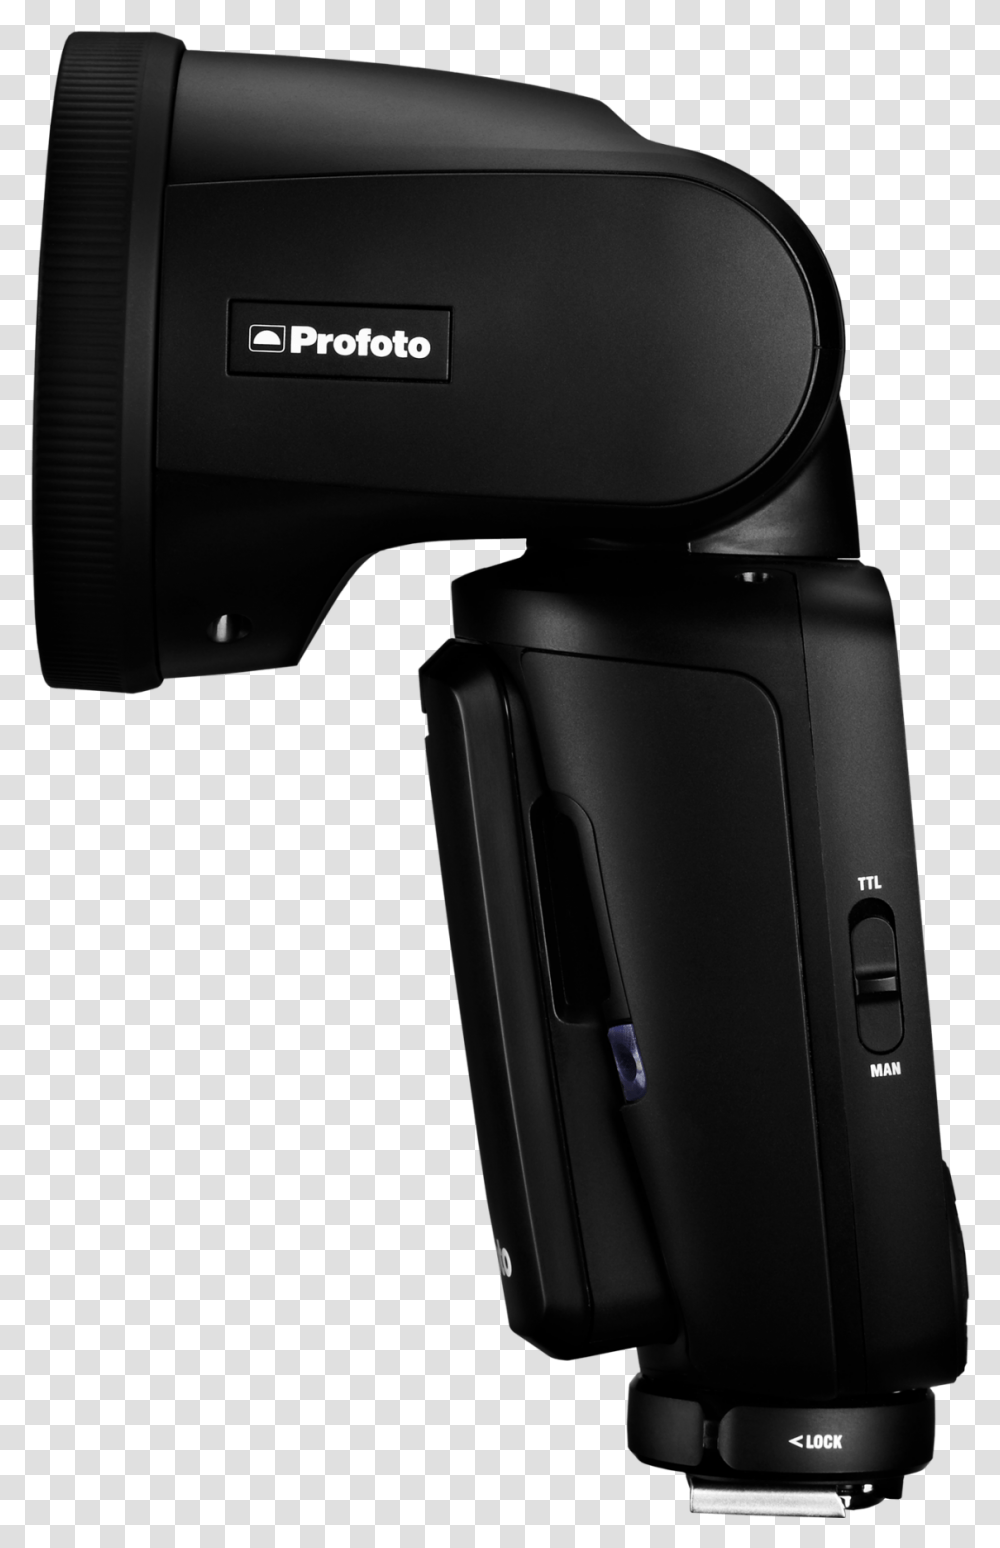 Godox V1 Vs Profoto, Electronics, Camera, Video Camera Transparent Png